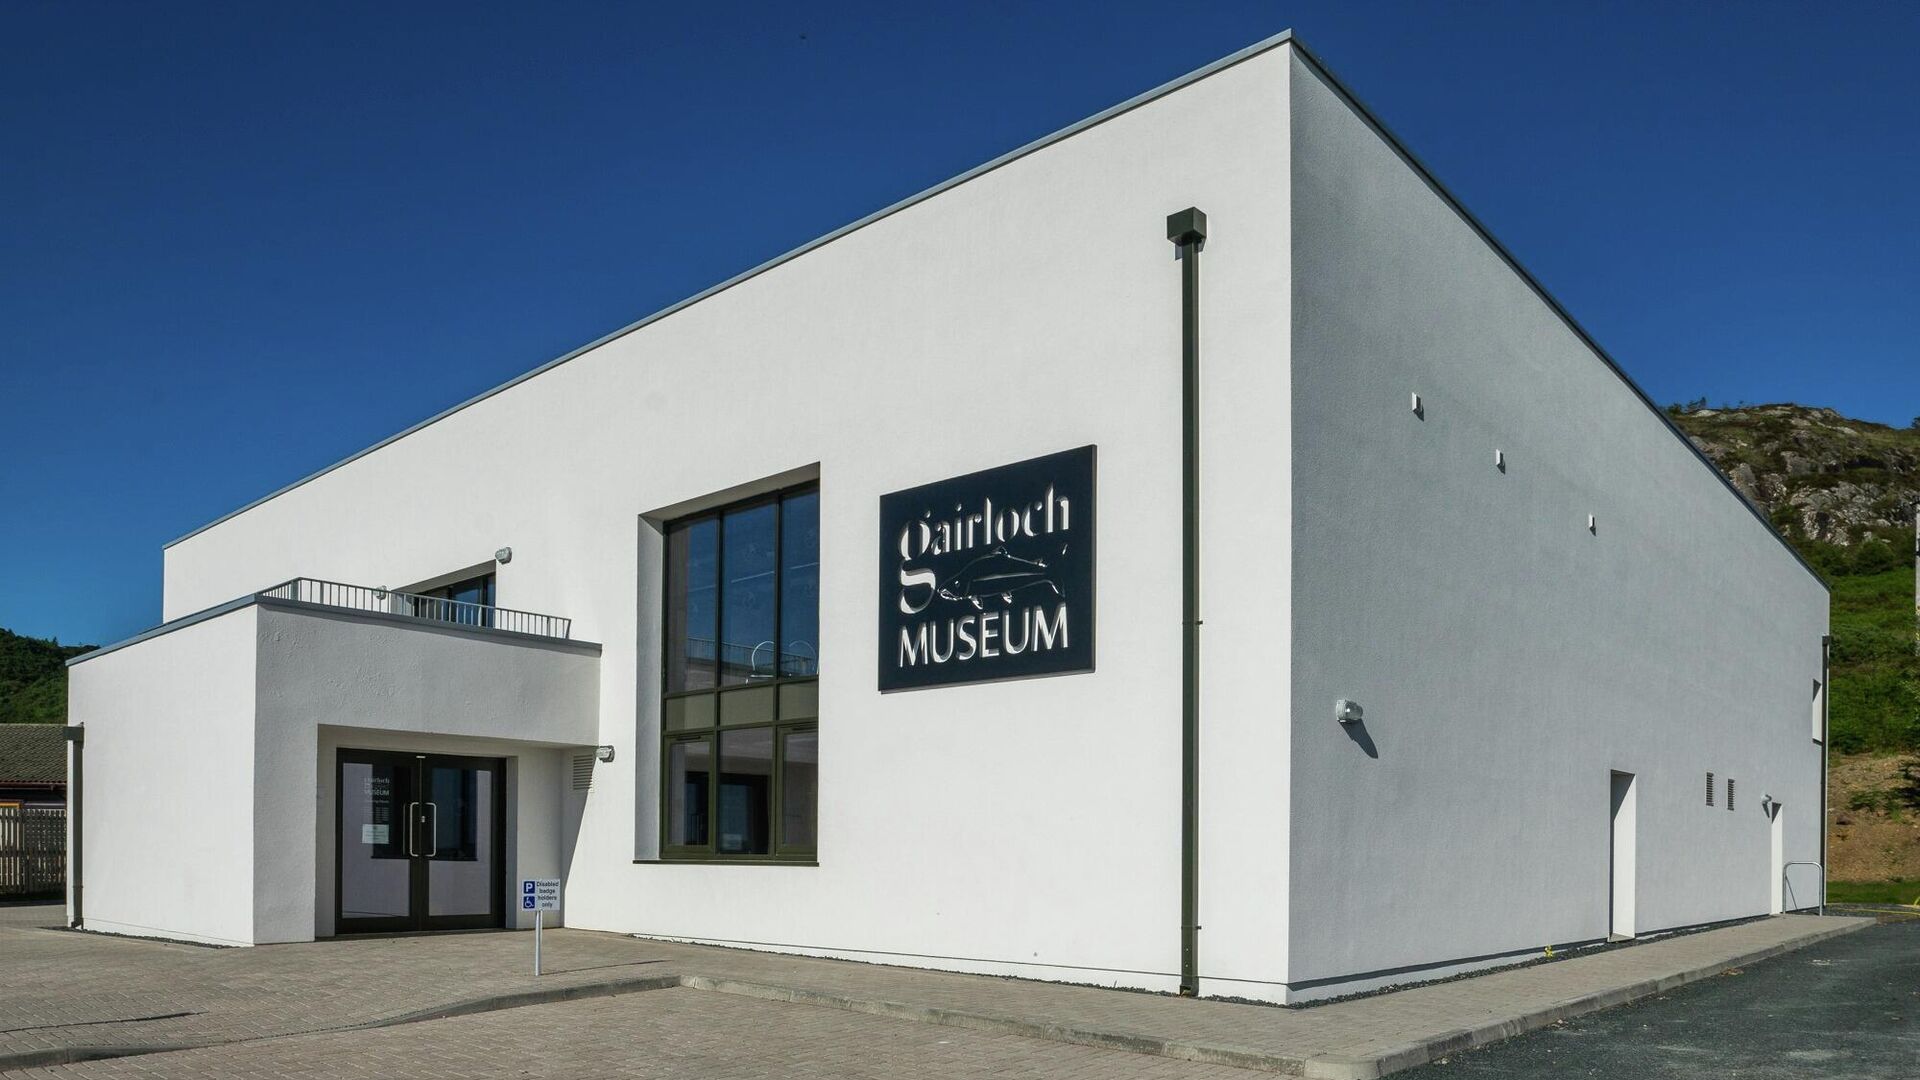 Музей Gairloch в Шотландии - РИА Новости, 1920, 13.10.2020